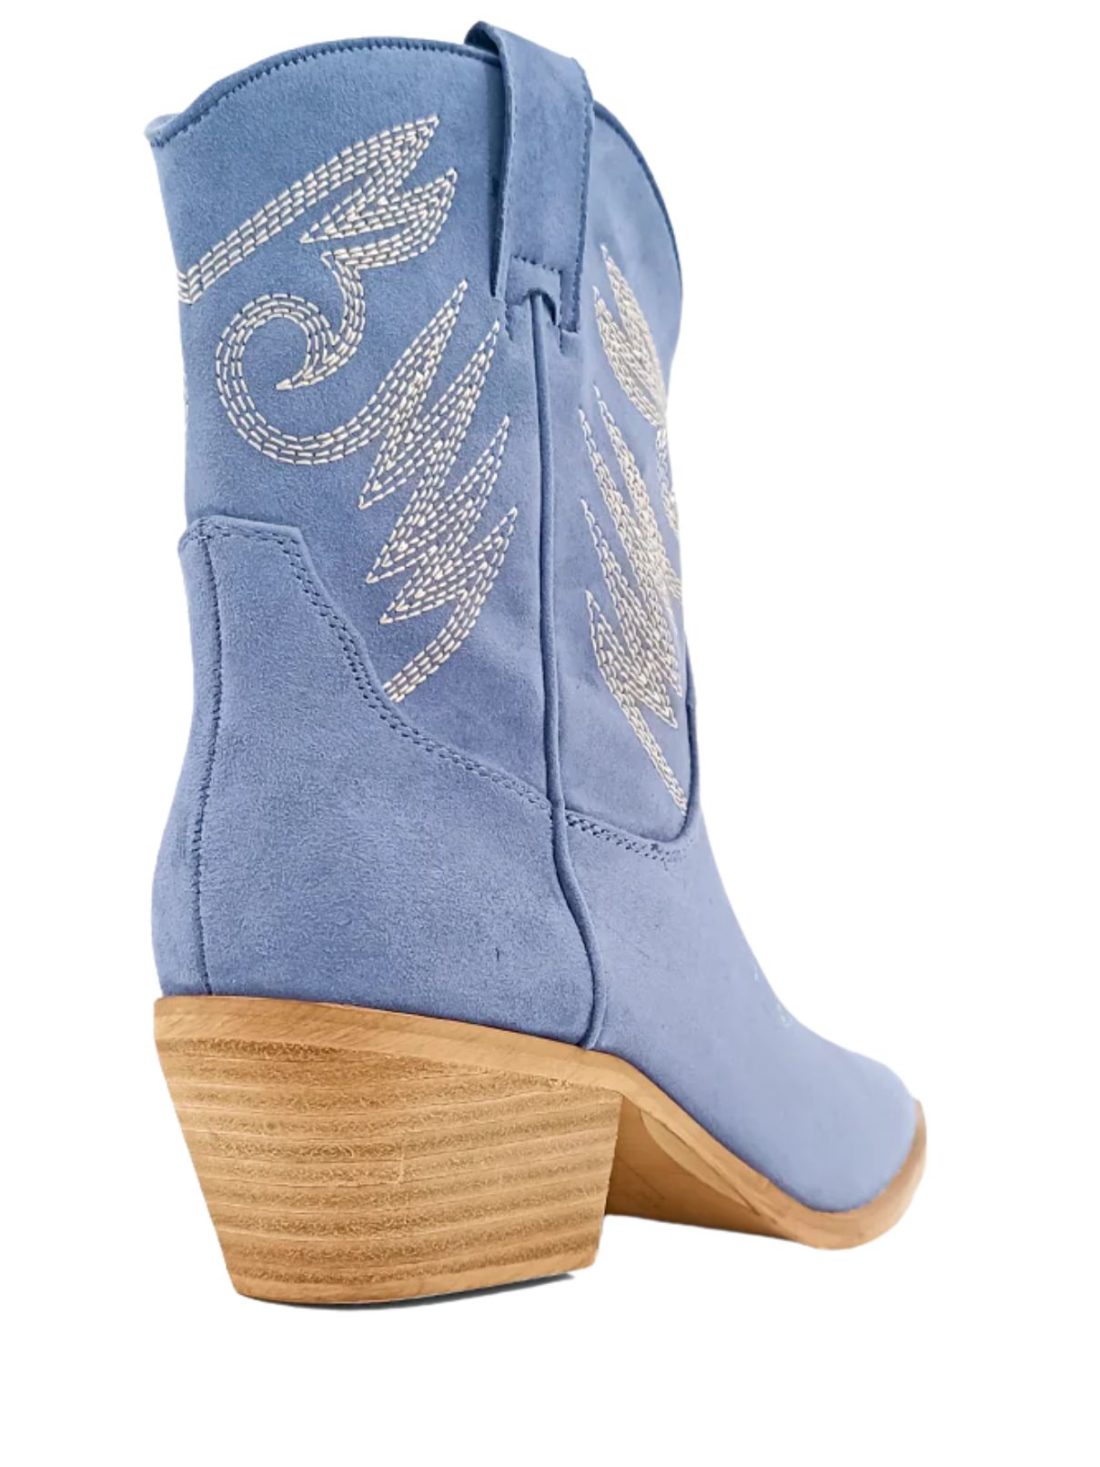 shu shop zahara cowboy boot in blue suede